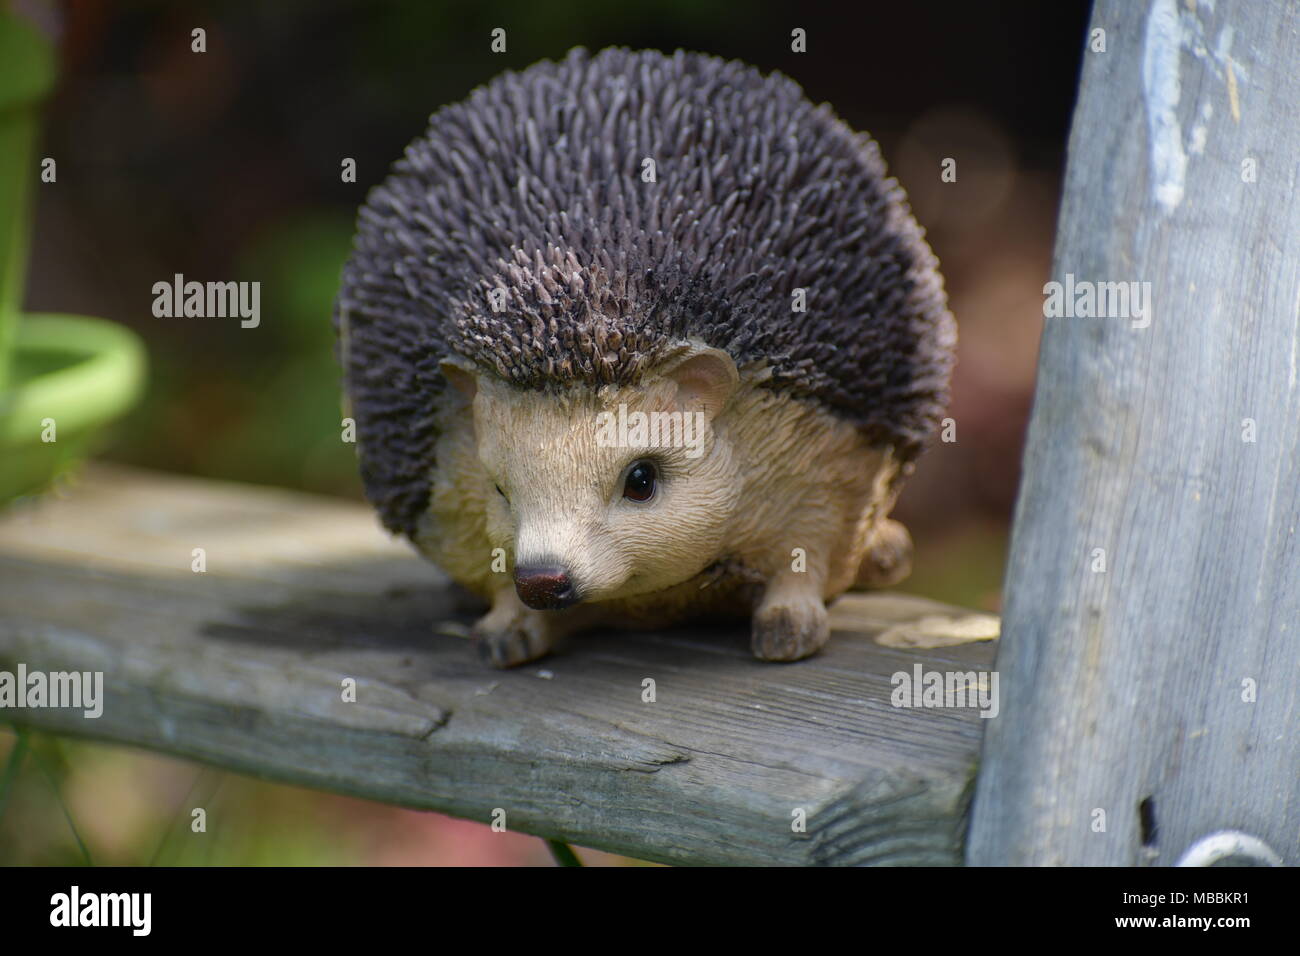 Hedgehog yard ornament sitting on a ladder Stock Photo